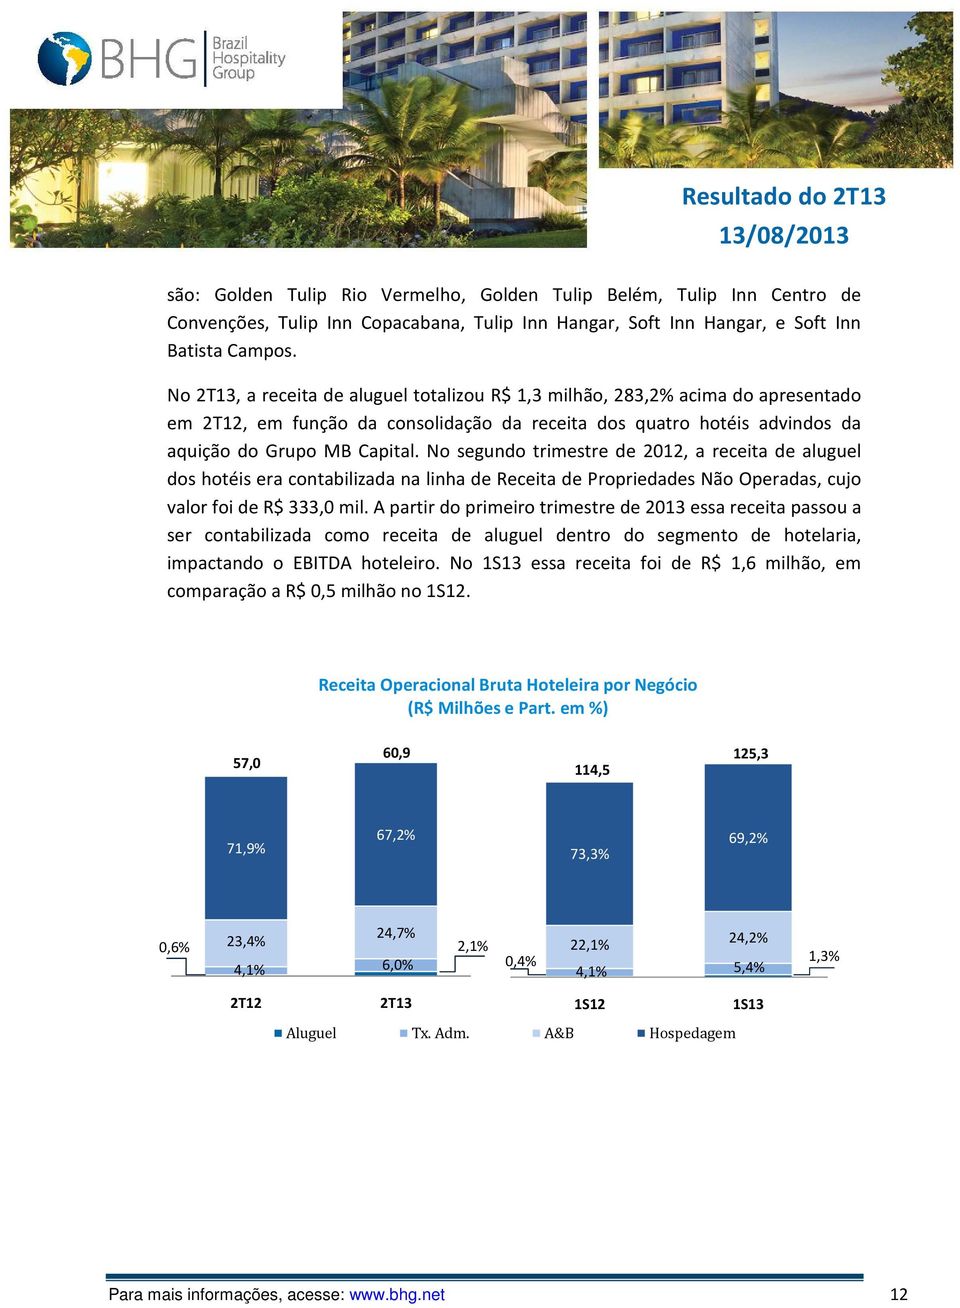 No segundo trimestre de 2012, a receita de aluguel dos hotéis era contabilizada na linha de Receita de Propriedades Não Operadas, cujo valor foi de R$ 333,0 mil.